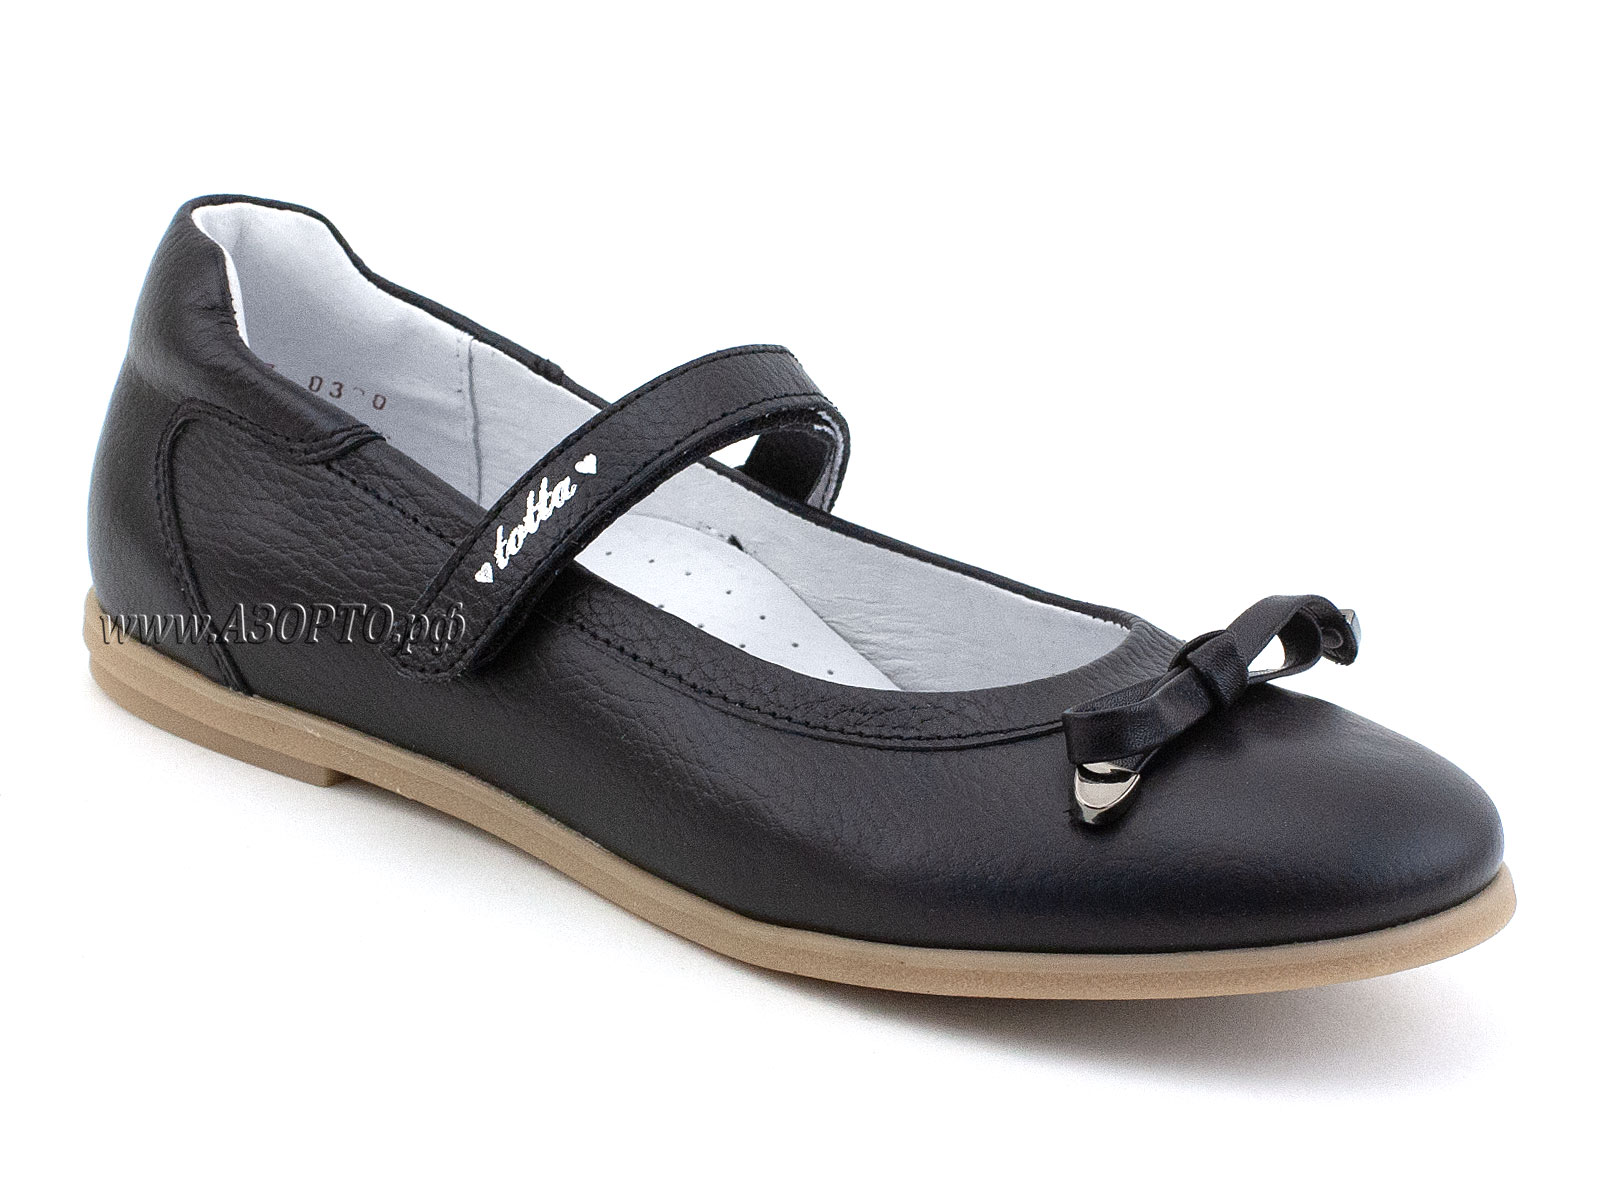 30012/1-701 Тотто (Totto), туфли детские ортопедические профилактические, кожа, чёрный.